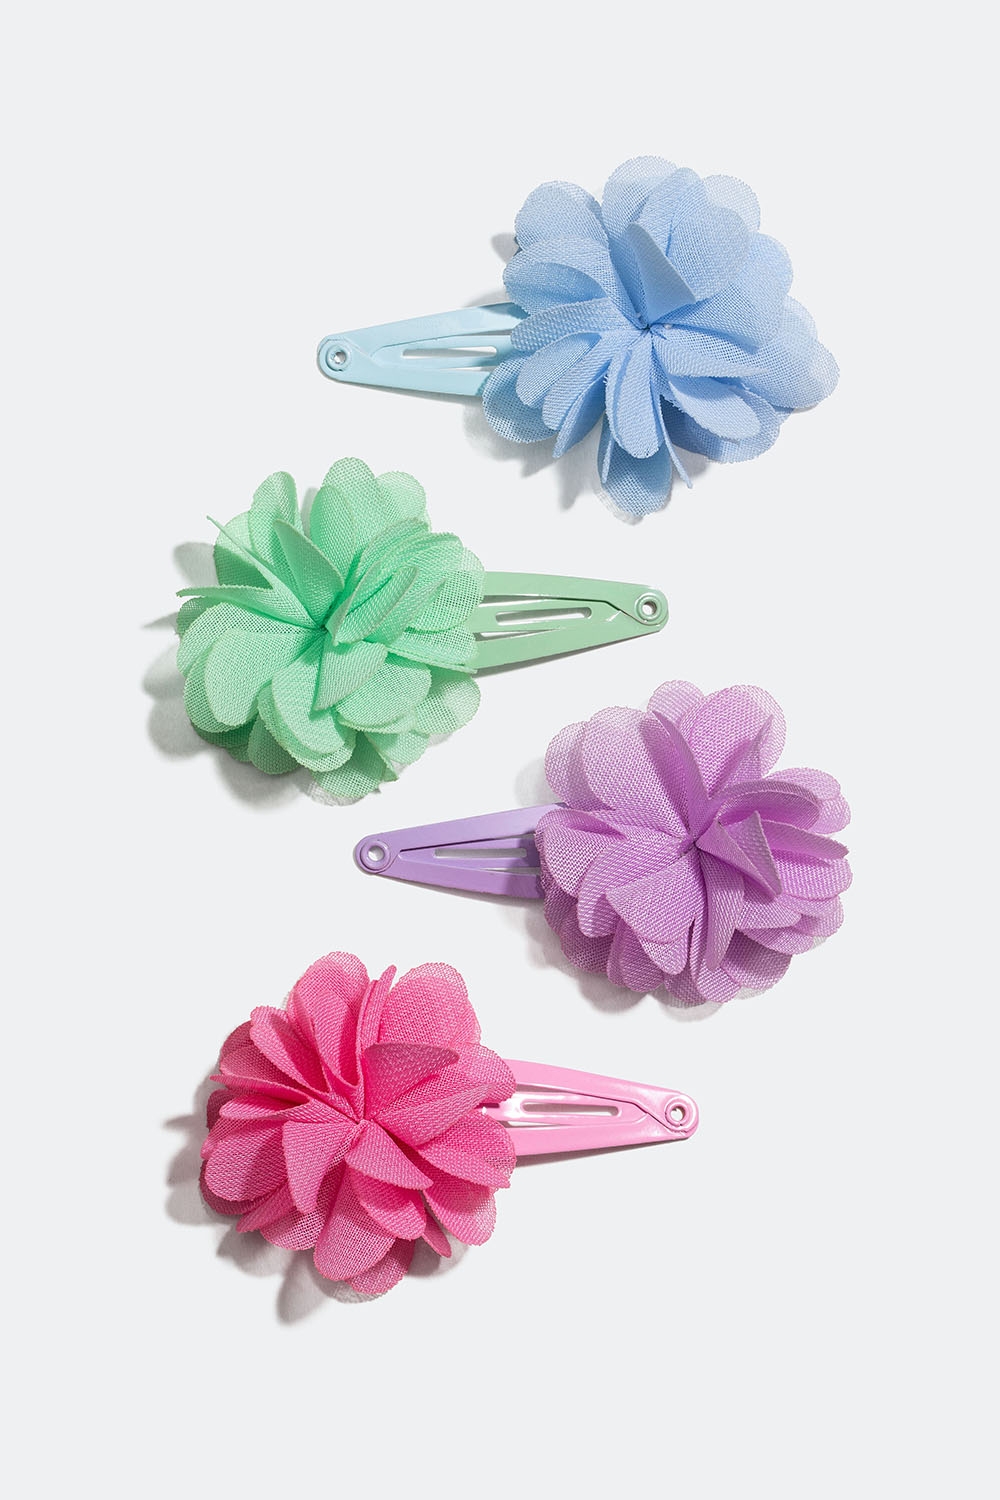 Hårspännen i olika färger med blommor, 4-pack i gruppen Barn / Barnhåraccessoarer / Barnhårspännen hos Glitter (403000099900)